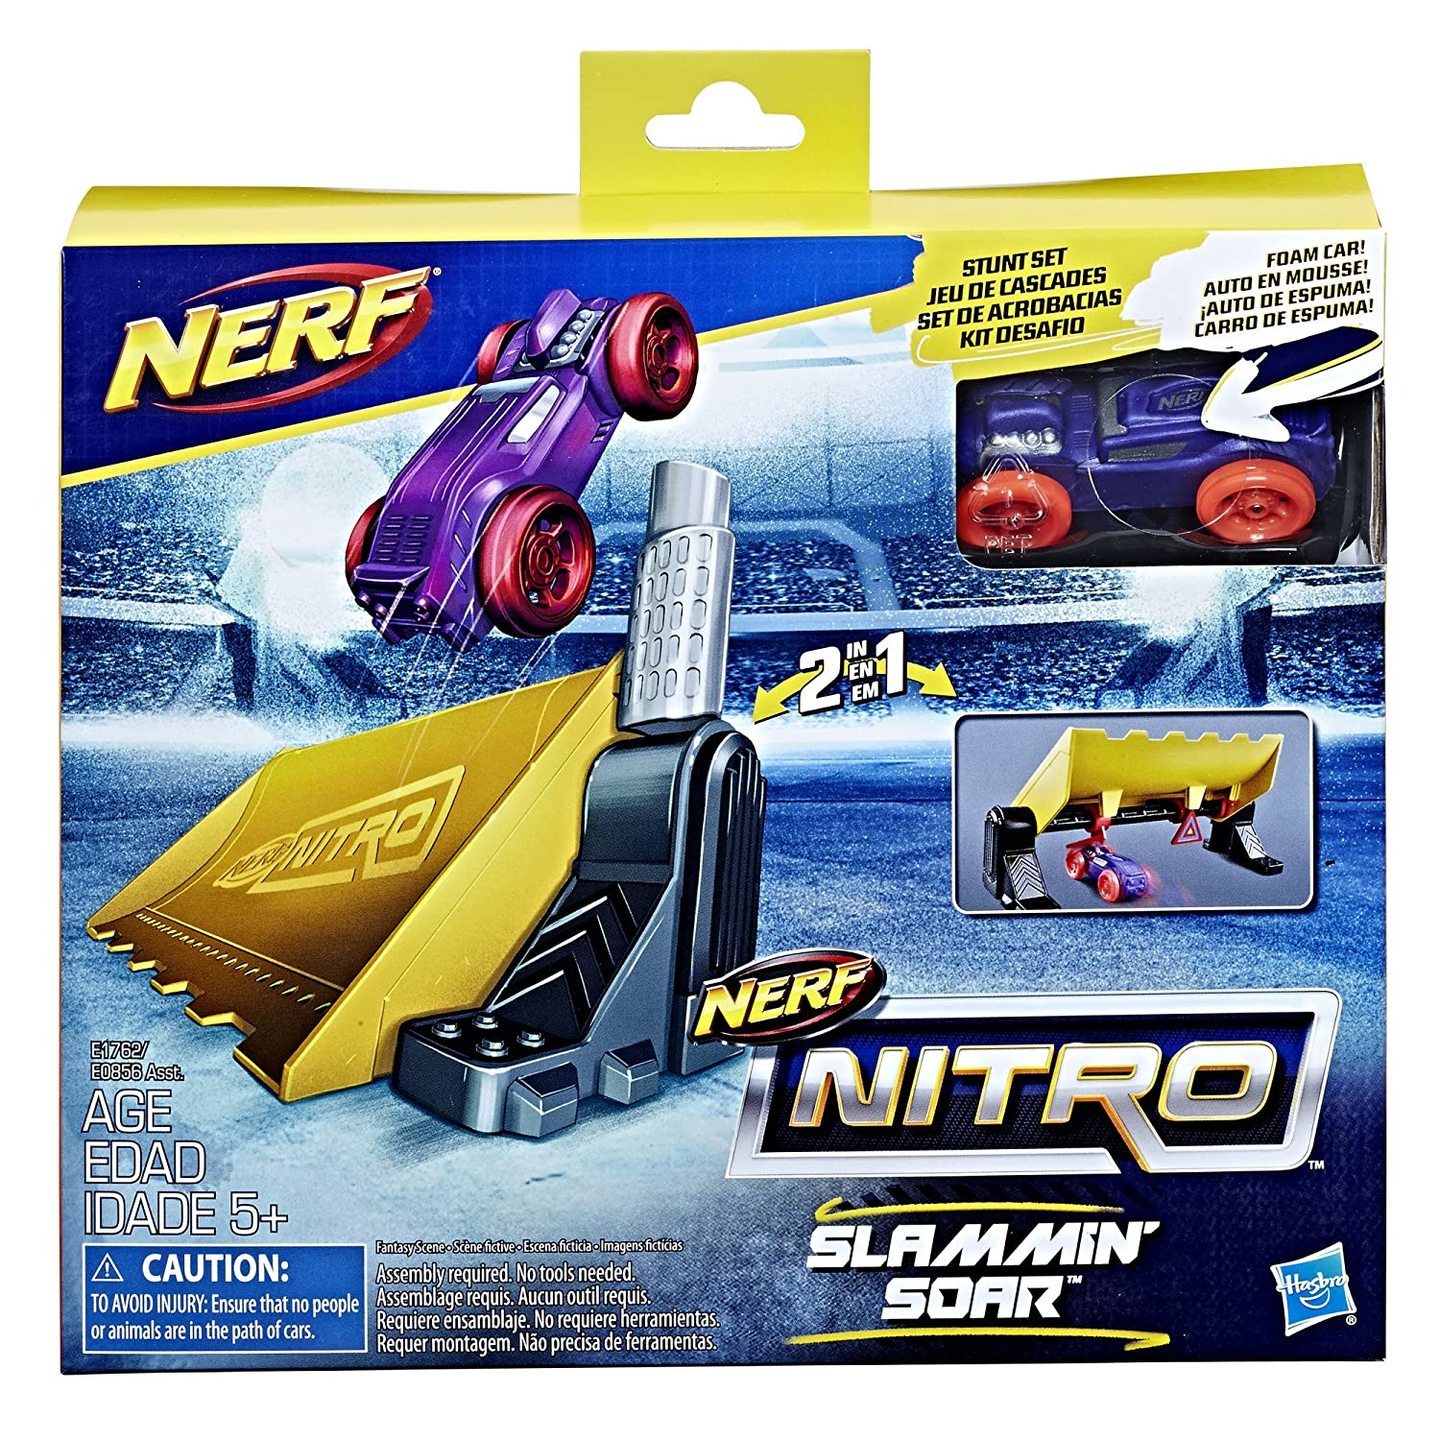 Nerf Slamming Soar Stunt Set Combat Blaster